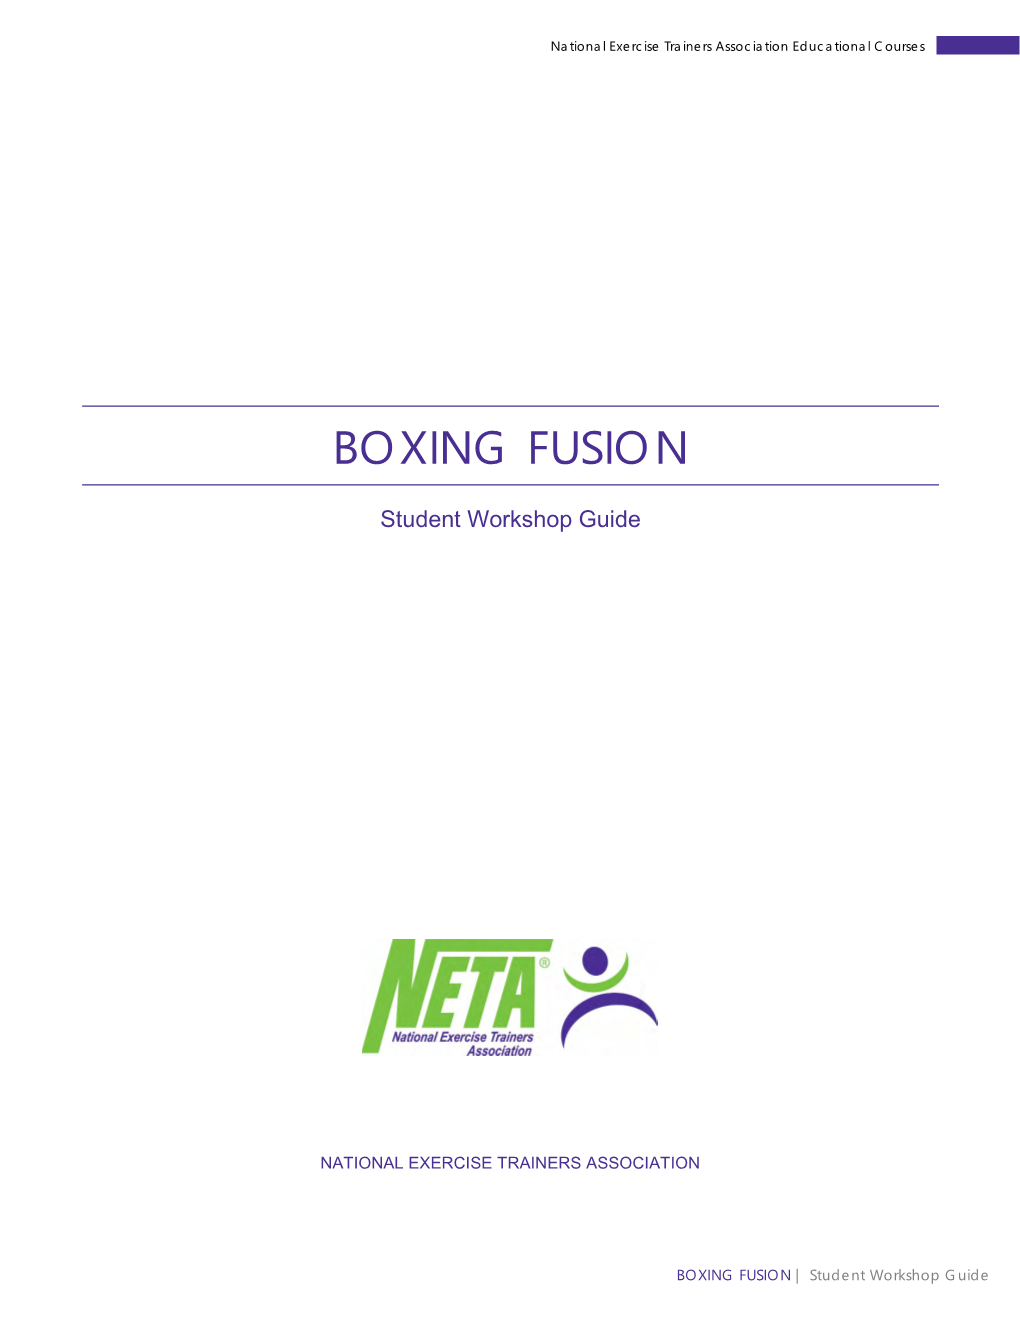 Boxing Fusion